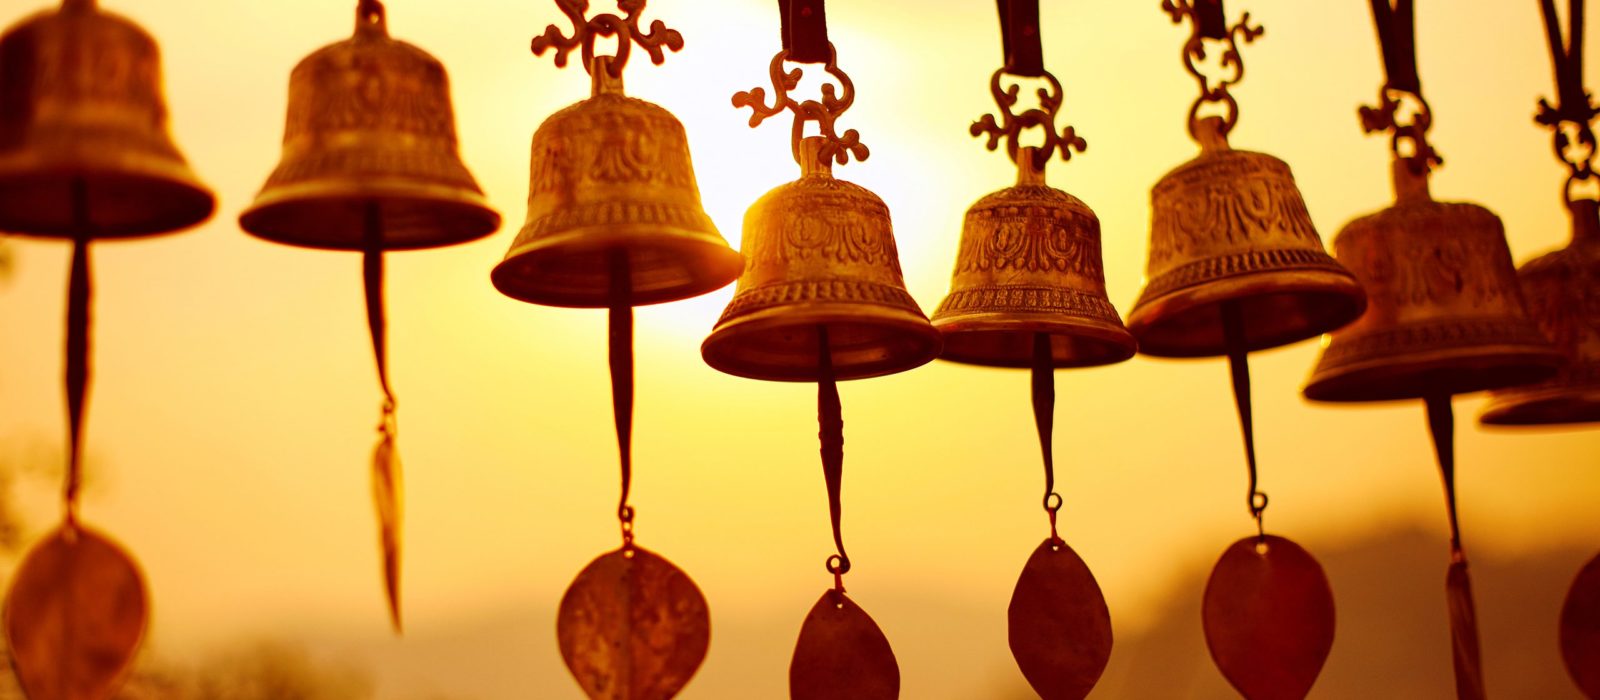 kathmandu-bells